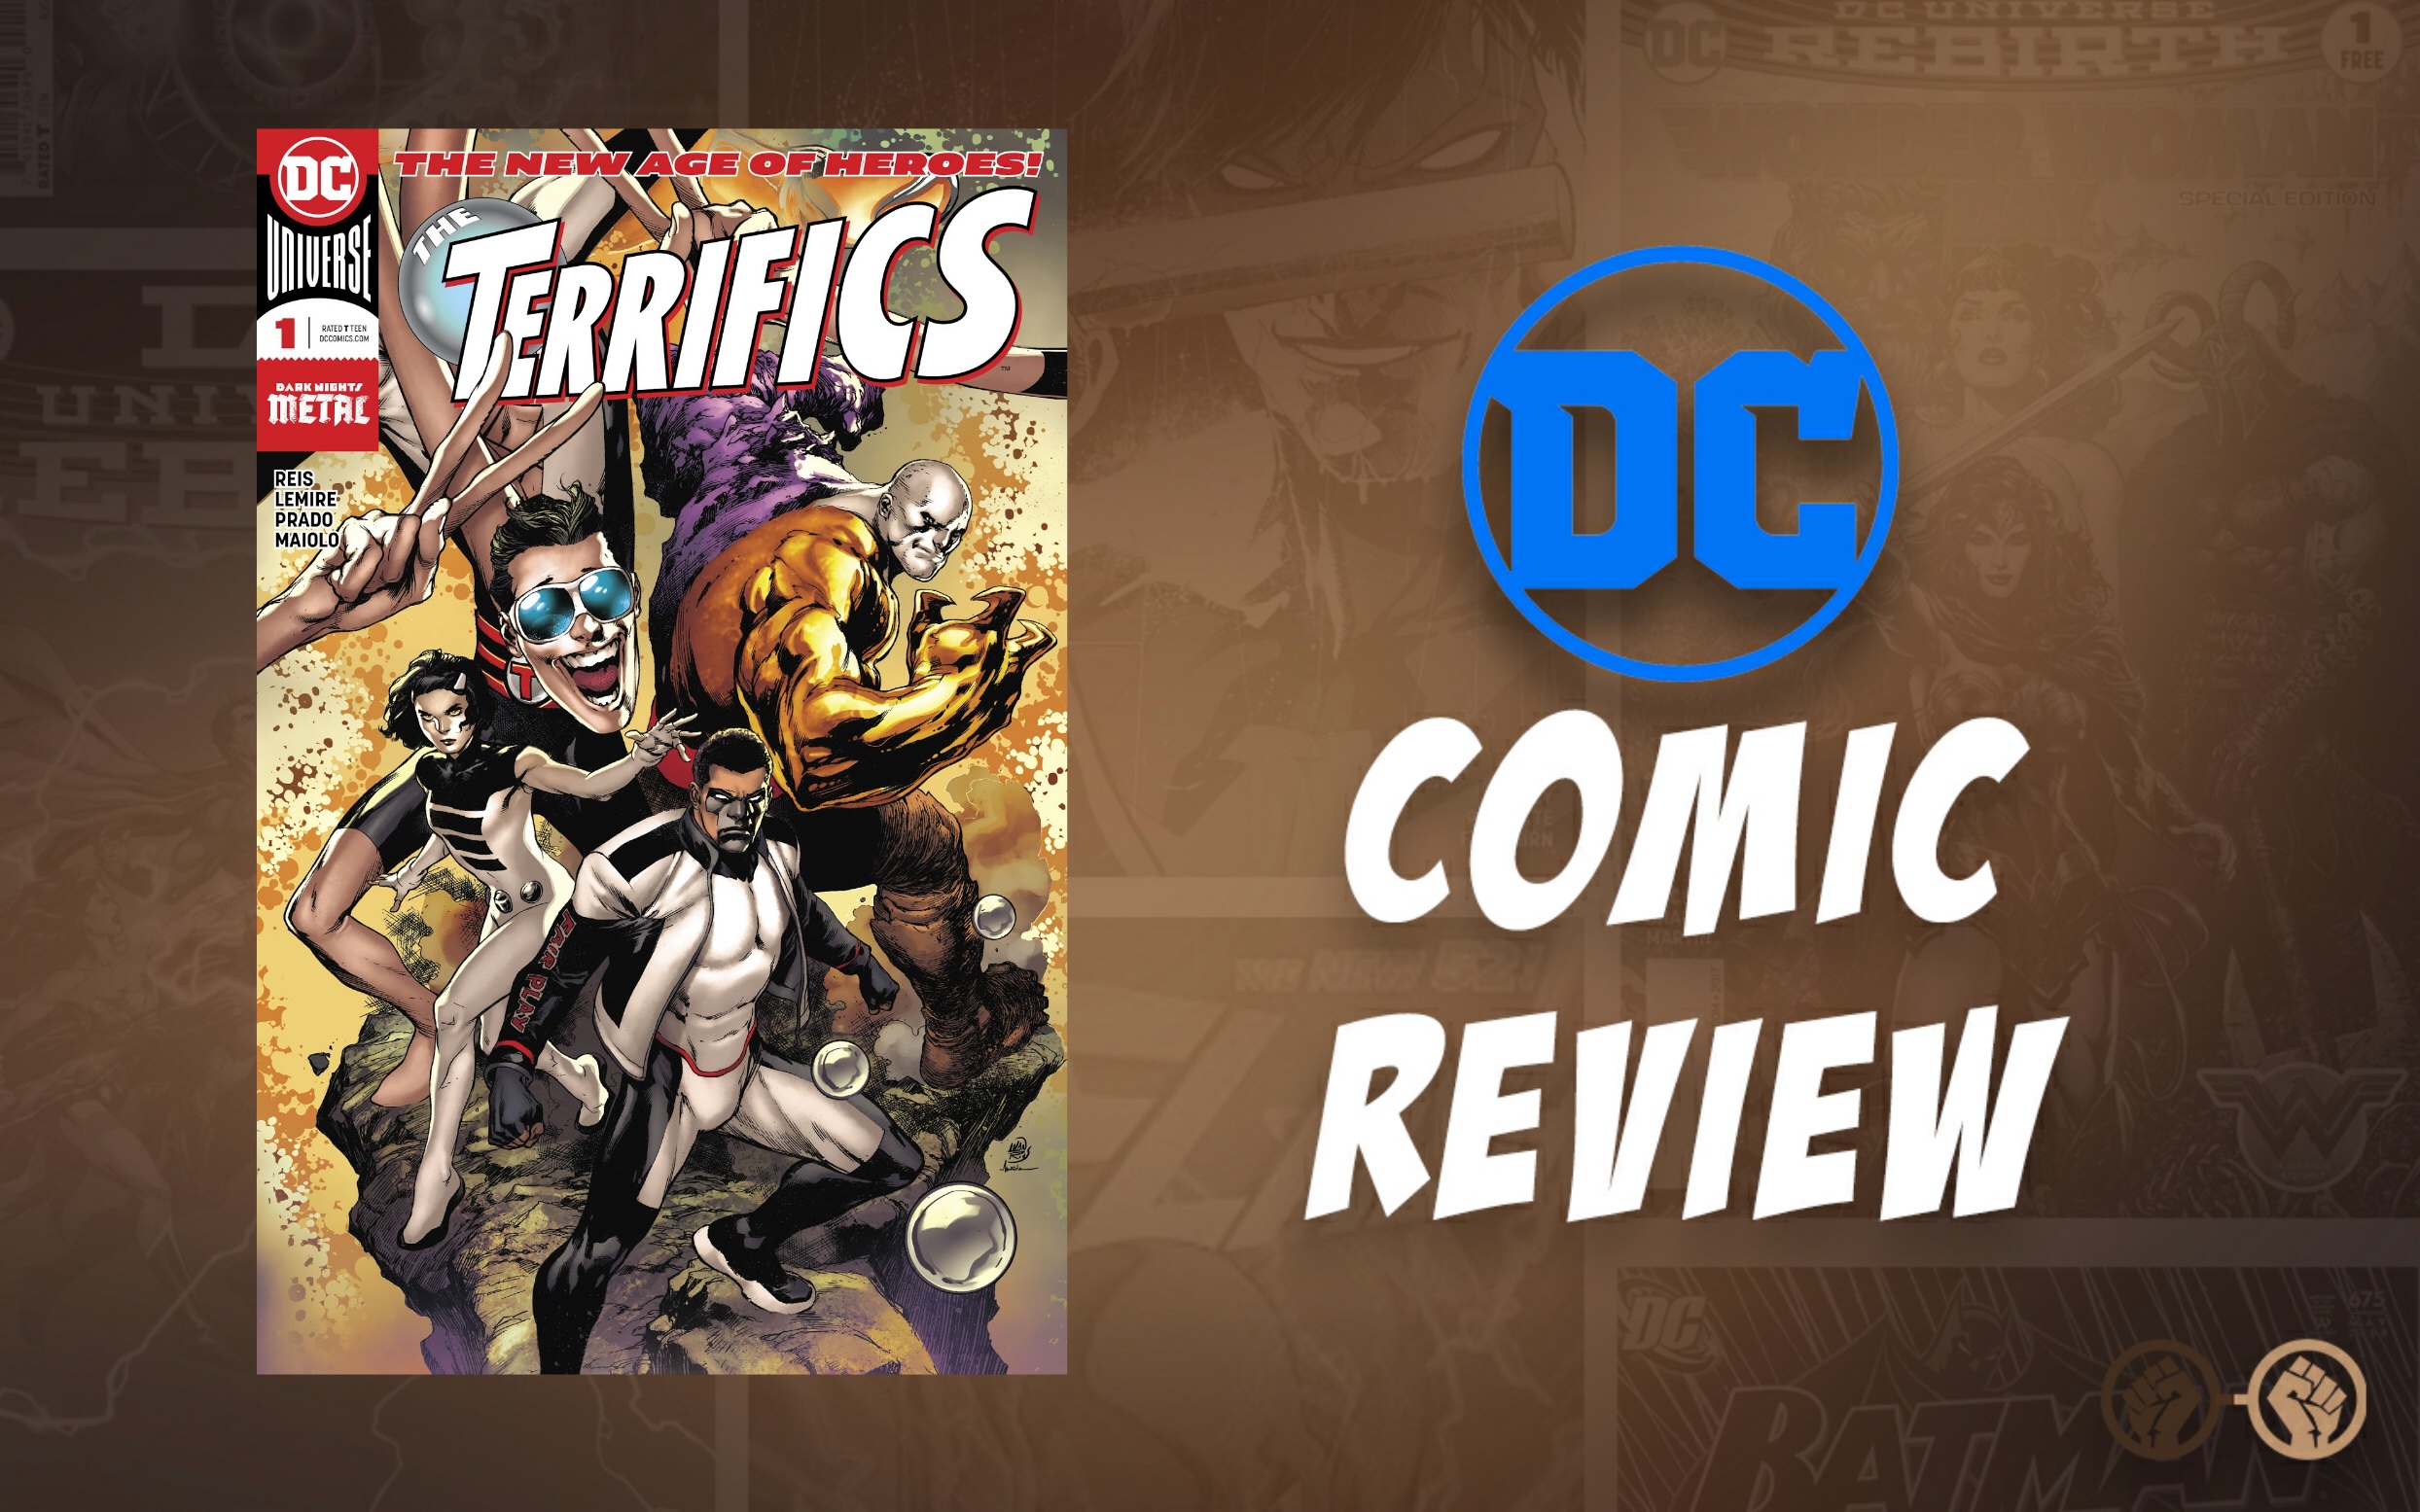 GoC Comic Review: The Terrifics #1 (Spoilers)